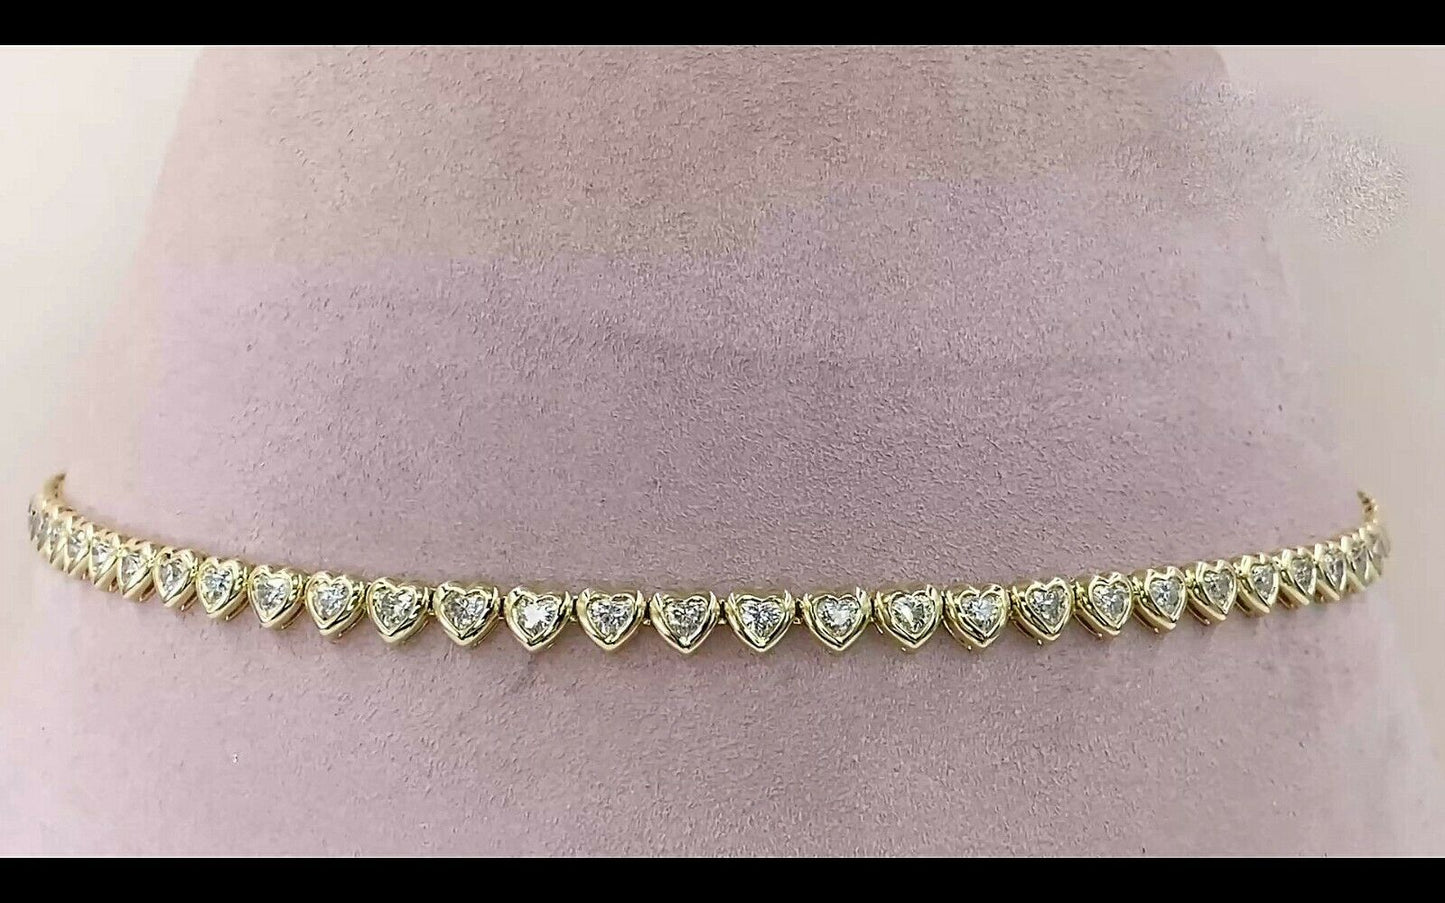 14K Gold 3.51 CT Heart Cut Diamond Tennis Necklace Bezel Set Womens Love